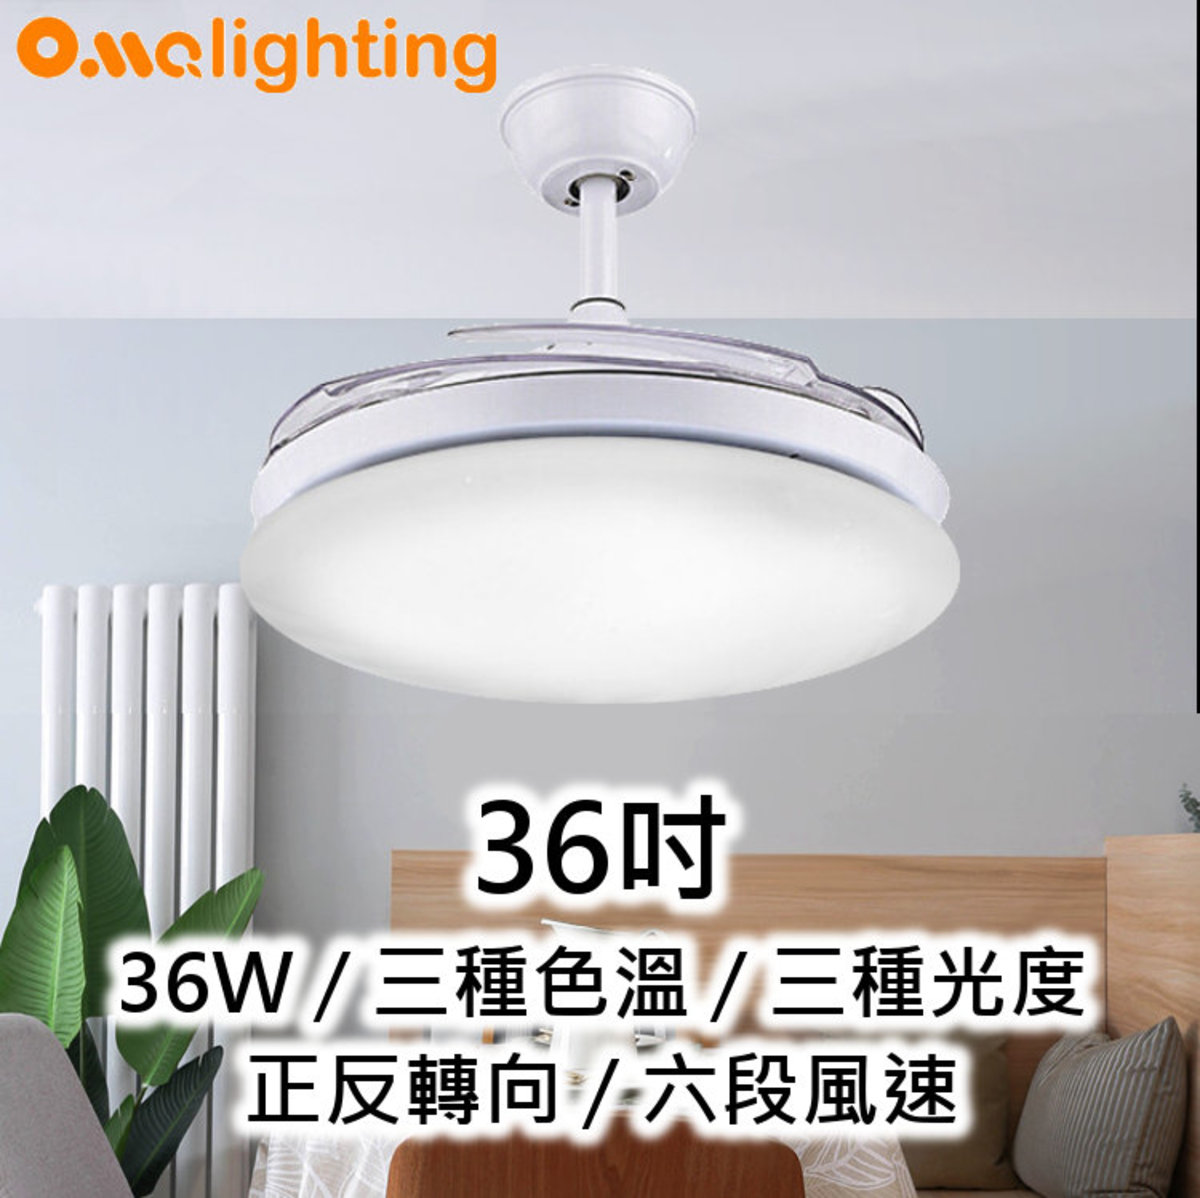 風扇燈36吋 LED36W 3種光度色溫 開合扇葉 吸頂天花燈飾 FAN01-36WH (2927)